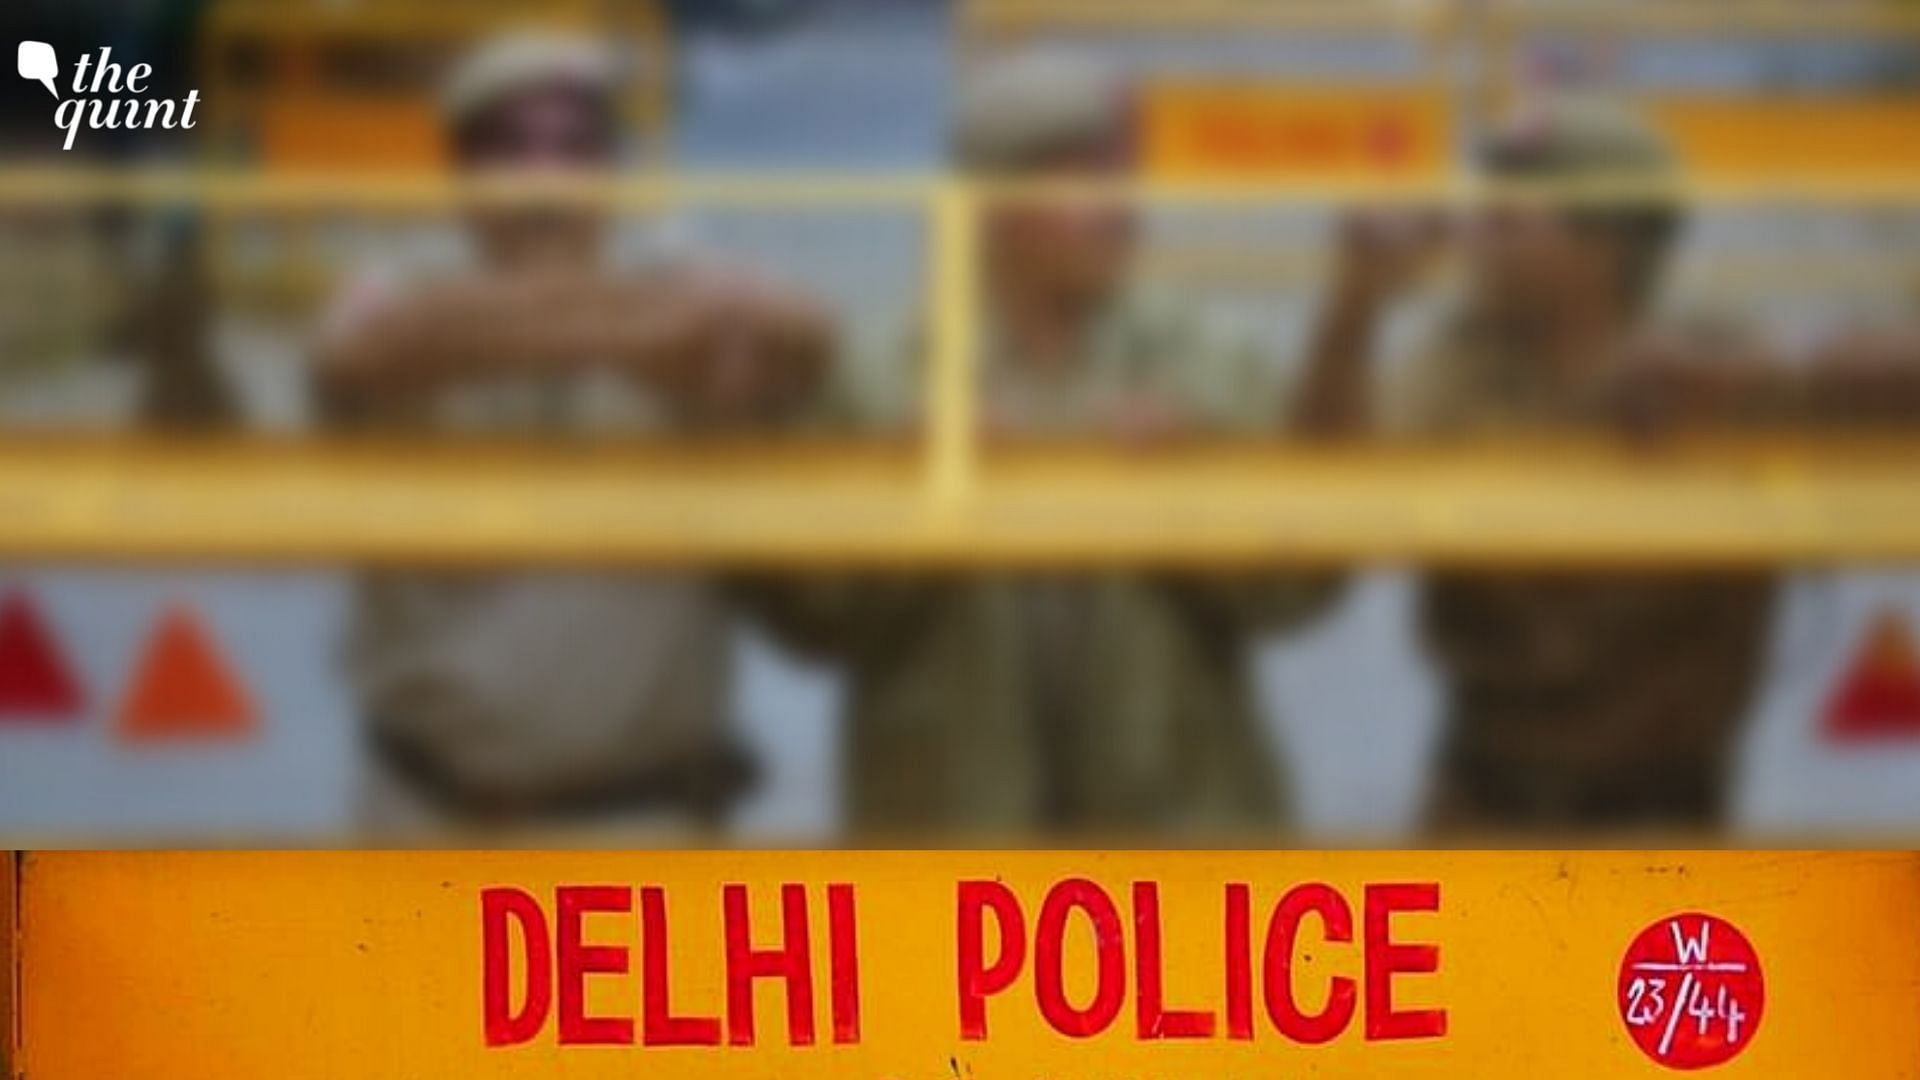 <div class="paragraphs"><p>Representational image of Delhi Police.</p></div>